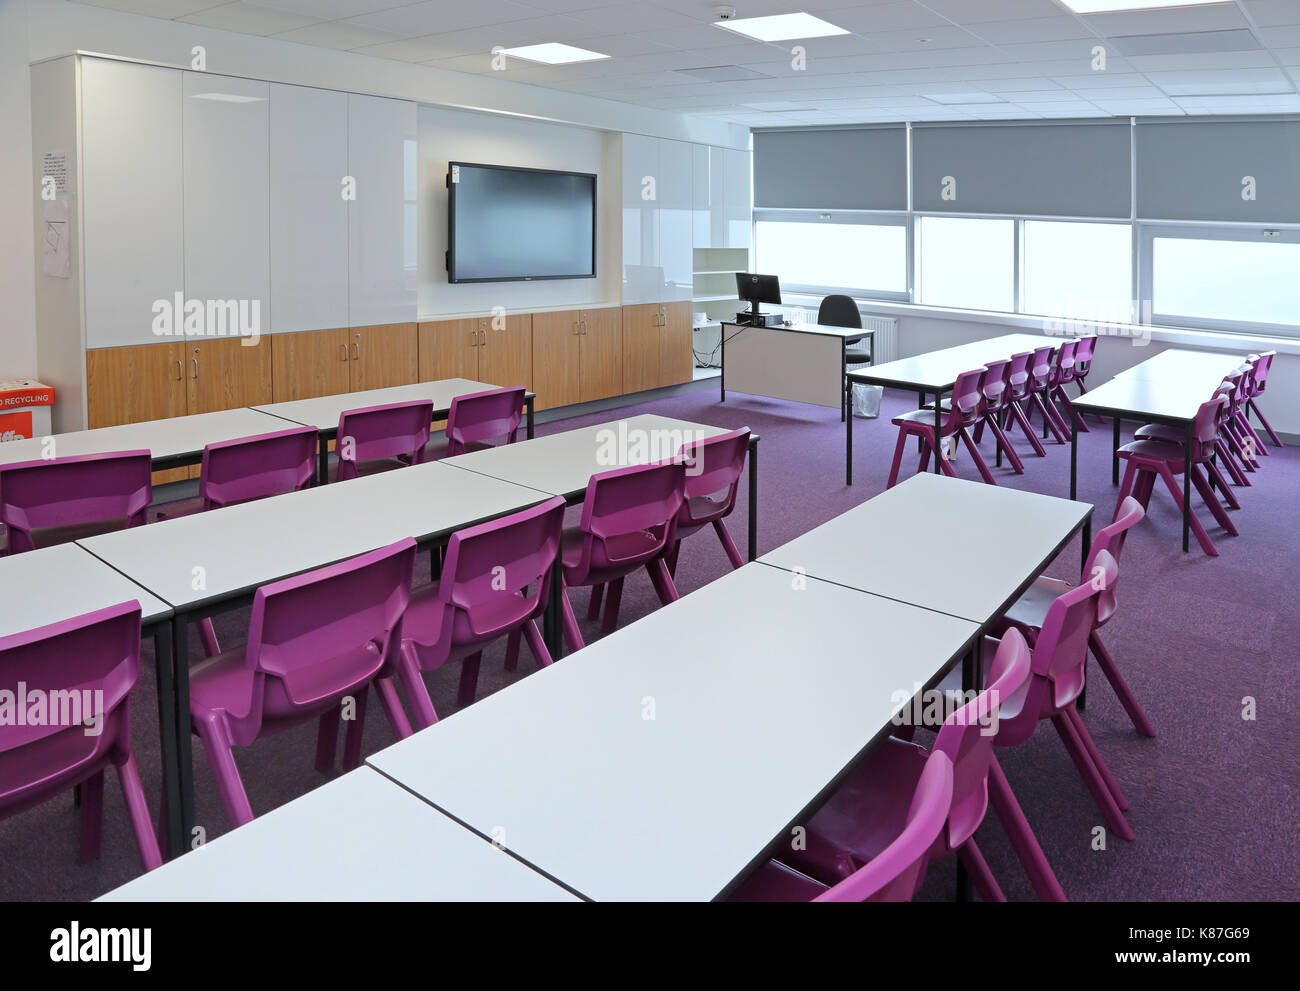 Un aula moderna en una nueva escuela secundaria de Londres. Muestra la disposición tradicional con escritorios frente a un gran monitor de ordenador.vacío, sin alumnos. Foto de stock